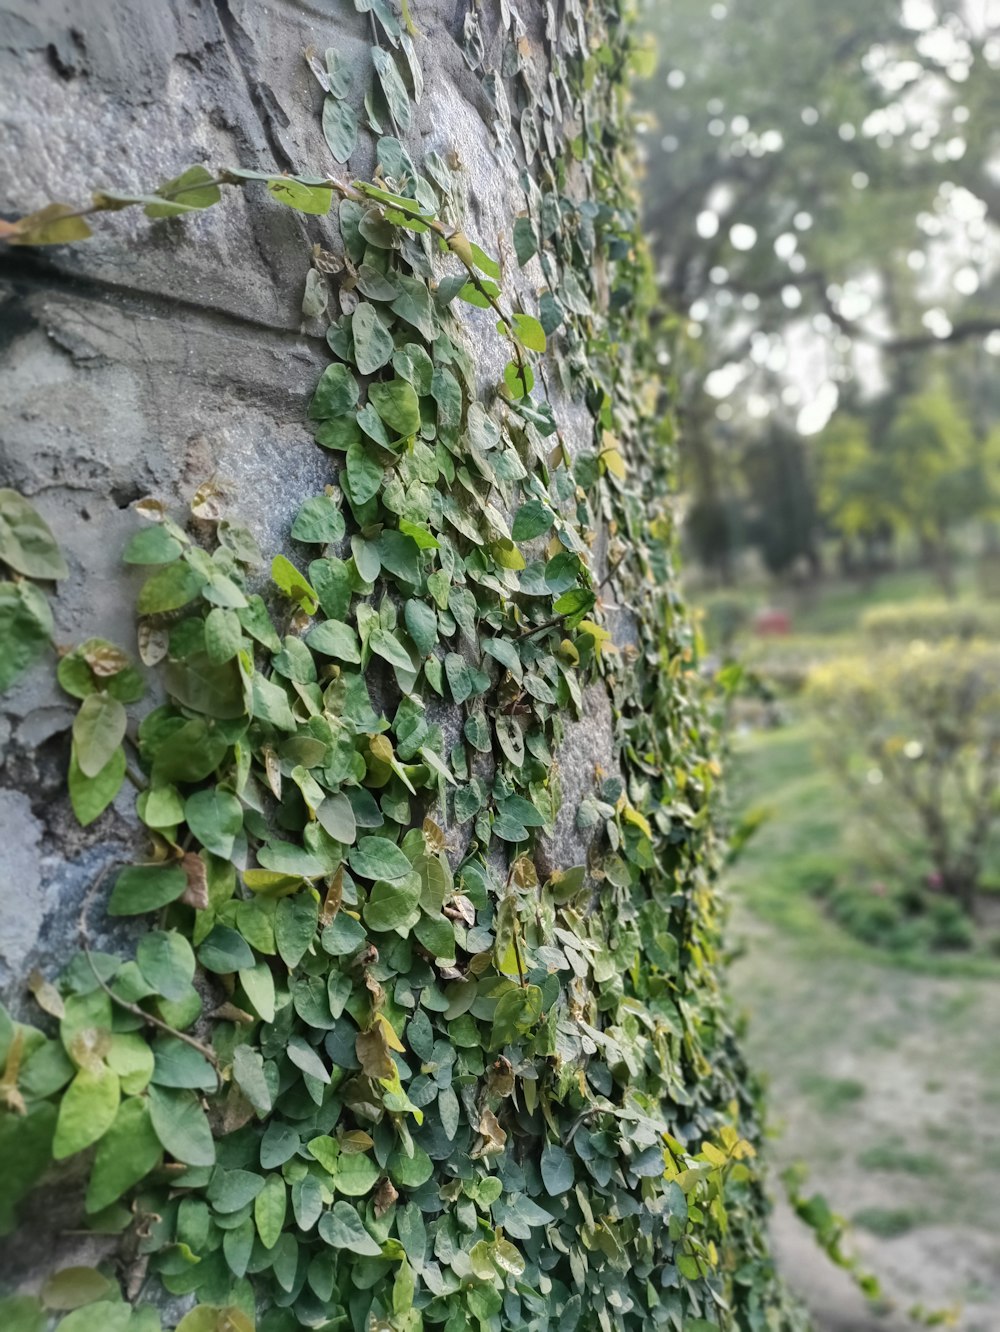 Un muro de piedra cubierto de enredaderas verdes